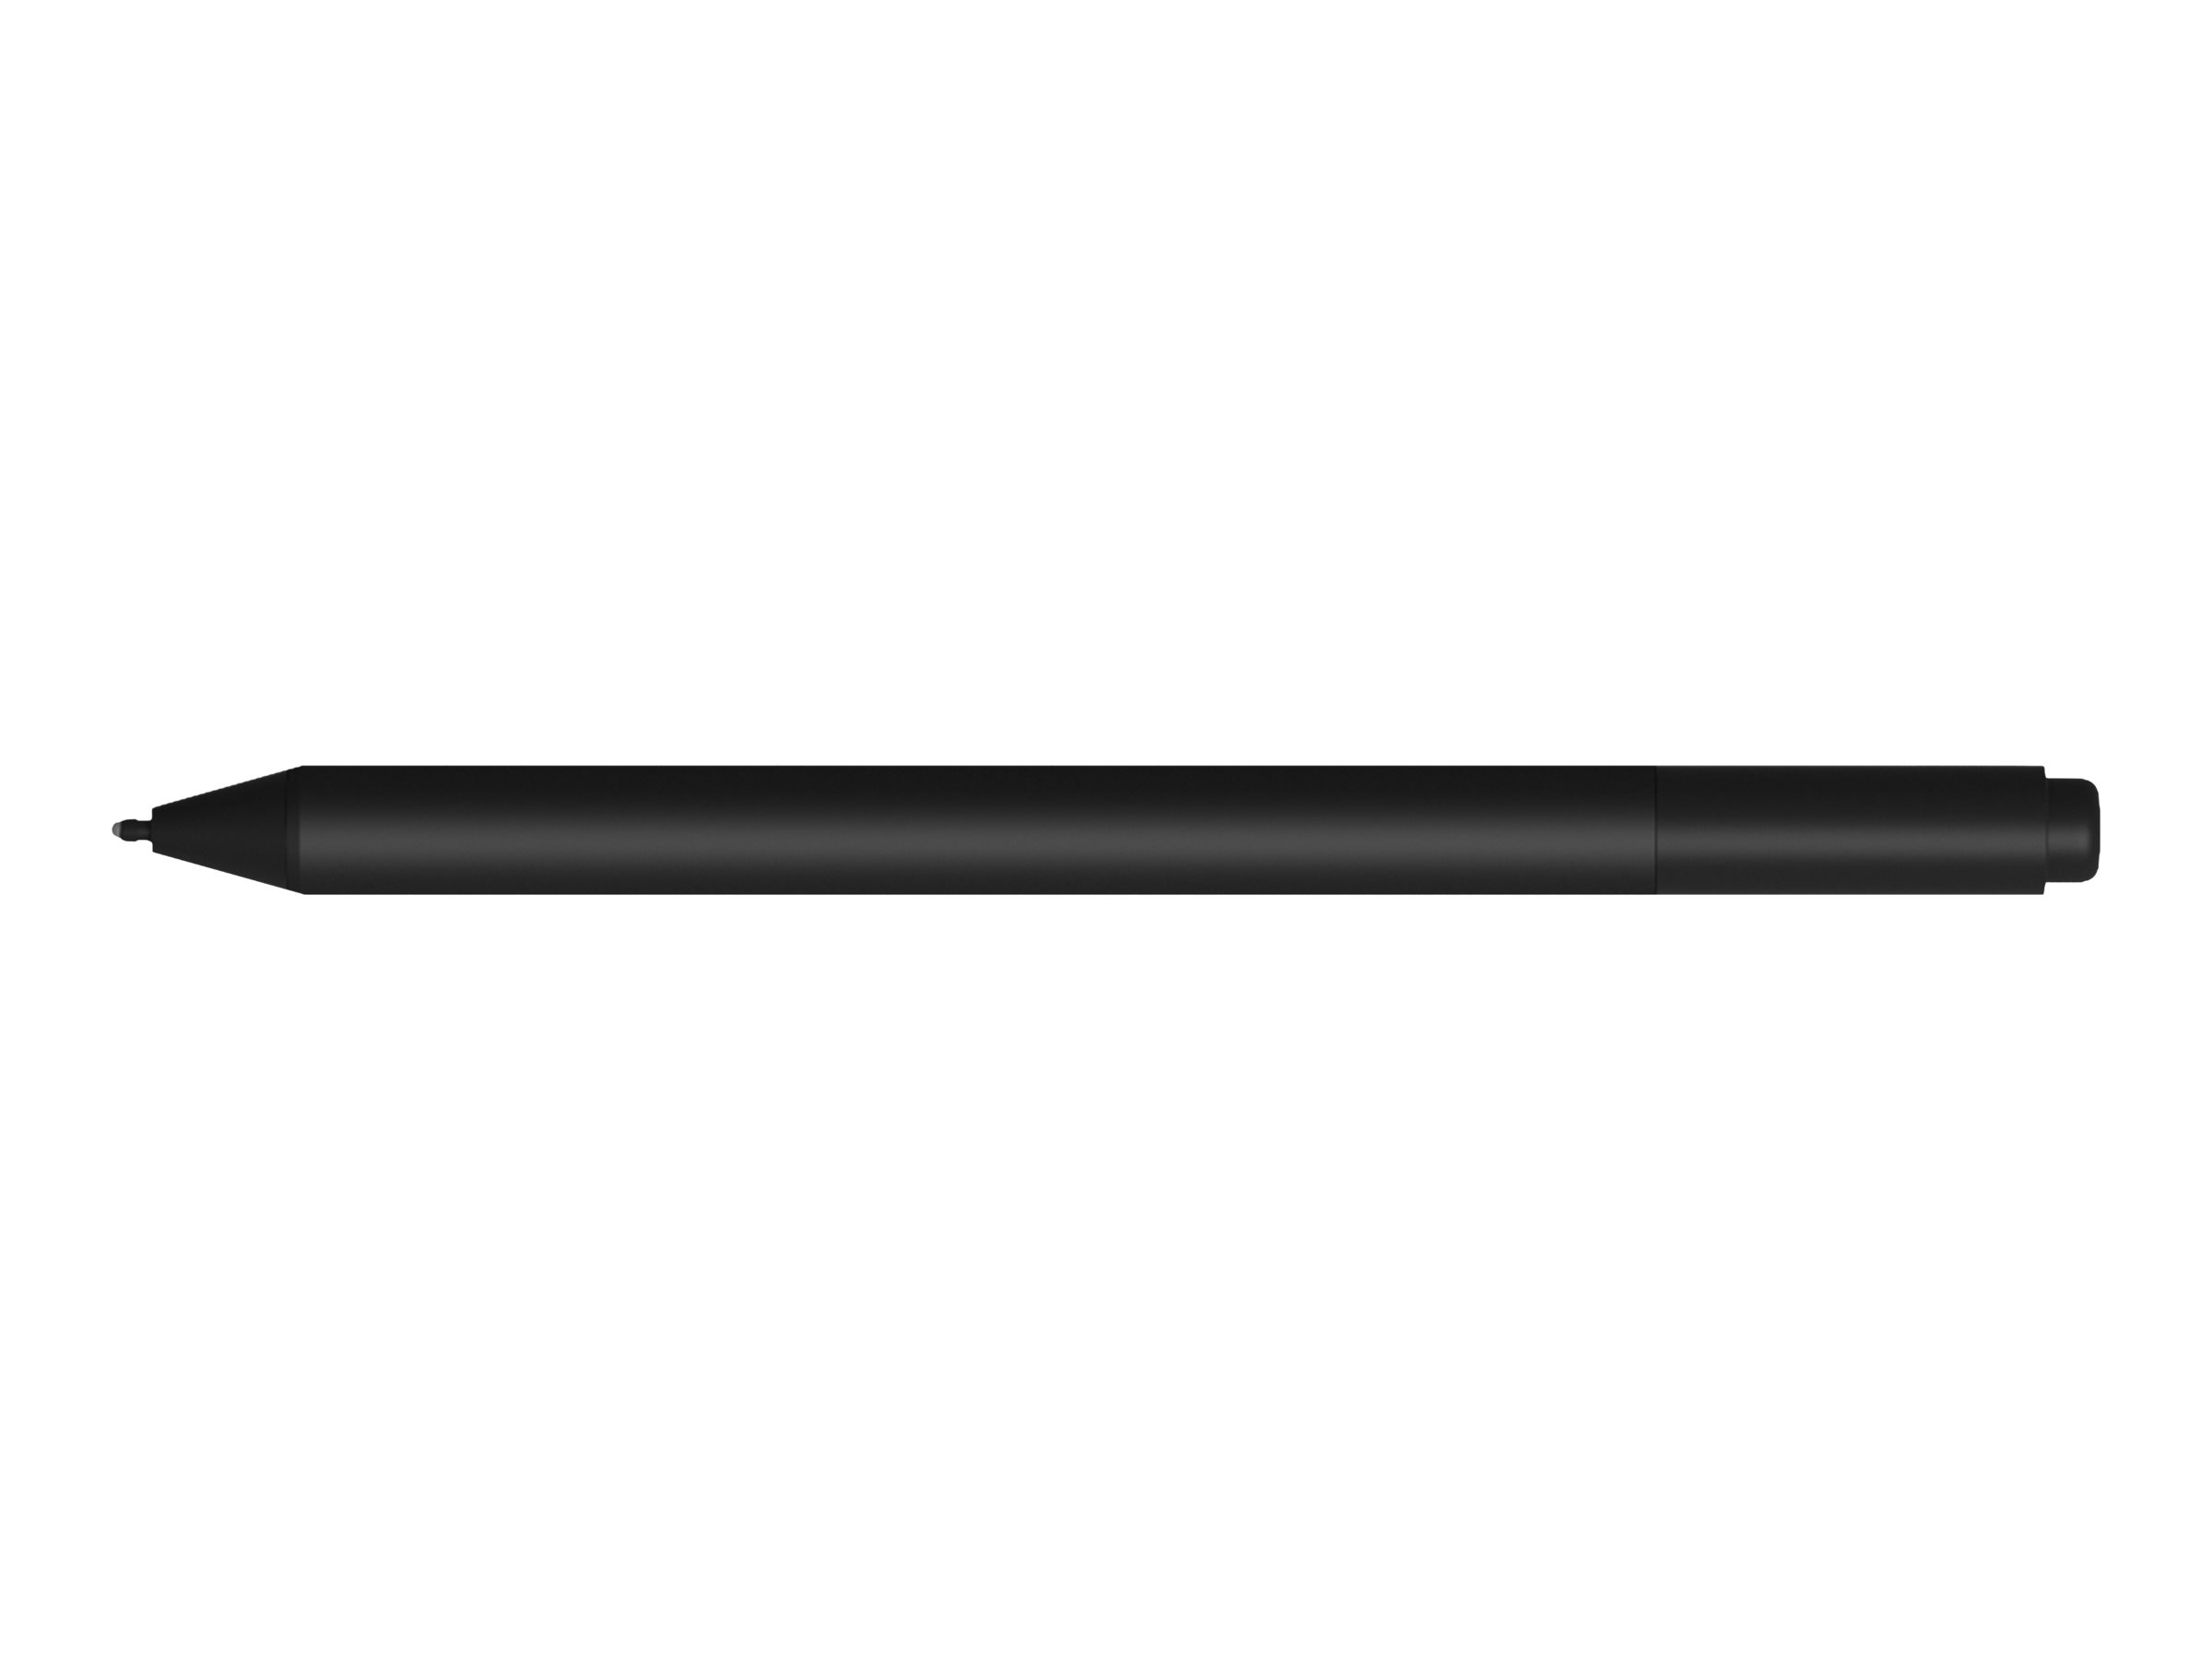 Microsoft Surface Pen M1776 - Stylet actif - 2 boutons - Bluetooth 4.0 - noir - commercial - pour Surface Book 3, Go 2, Go 3, Go 4, Laptop 3, Laptop 4, Laptop 5, Pro 7, Pro 7+, Studio 2+ - EYV-00002 - Dispositifs de pointage